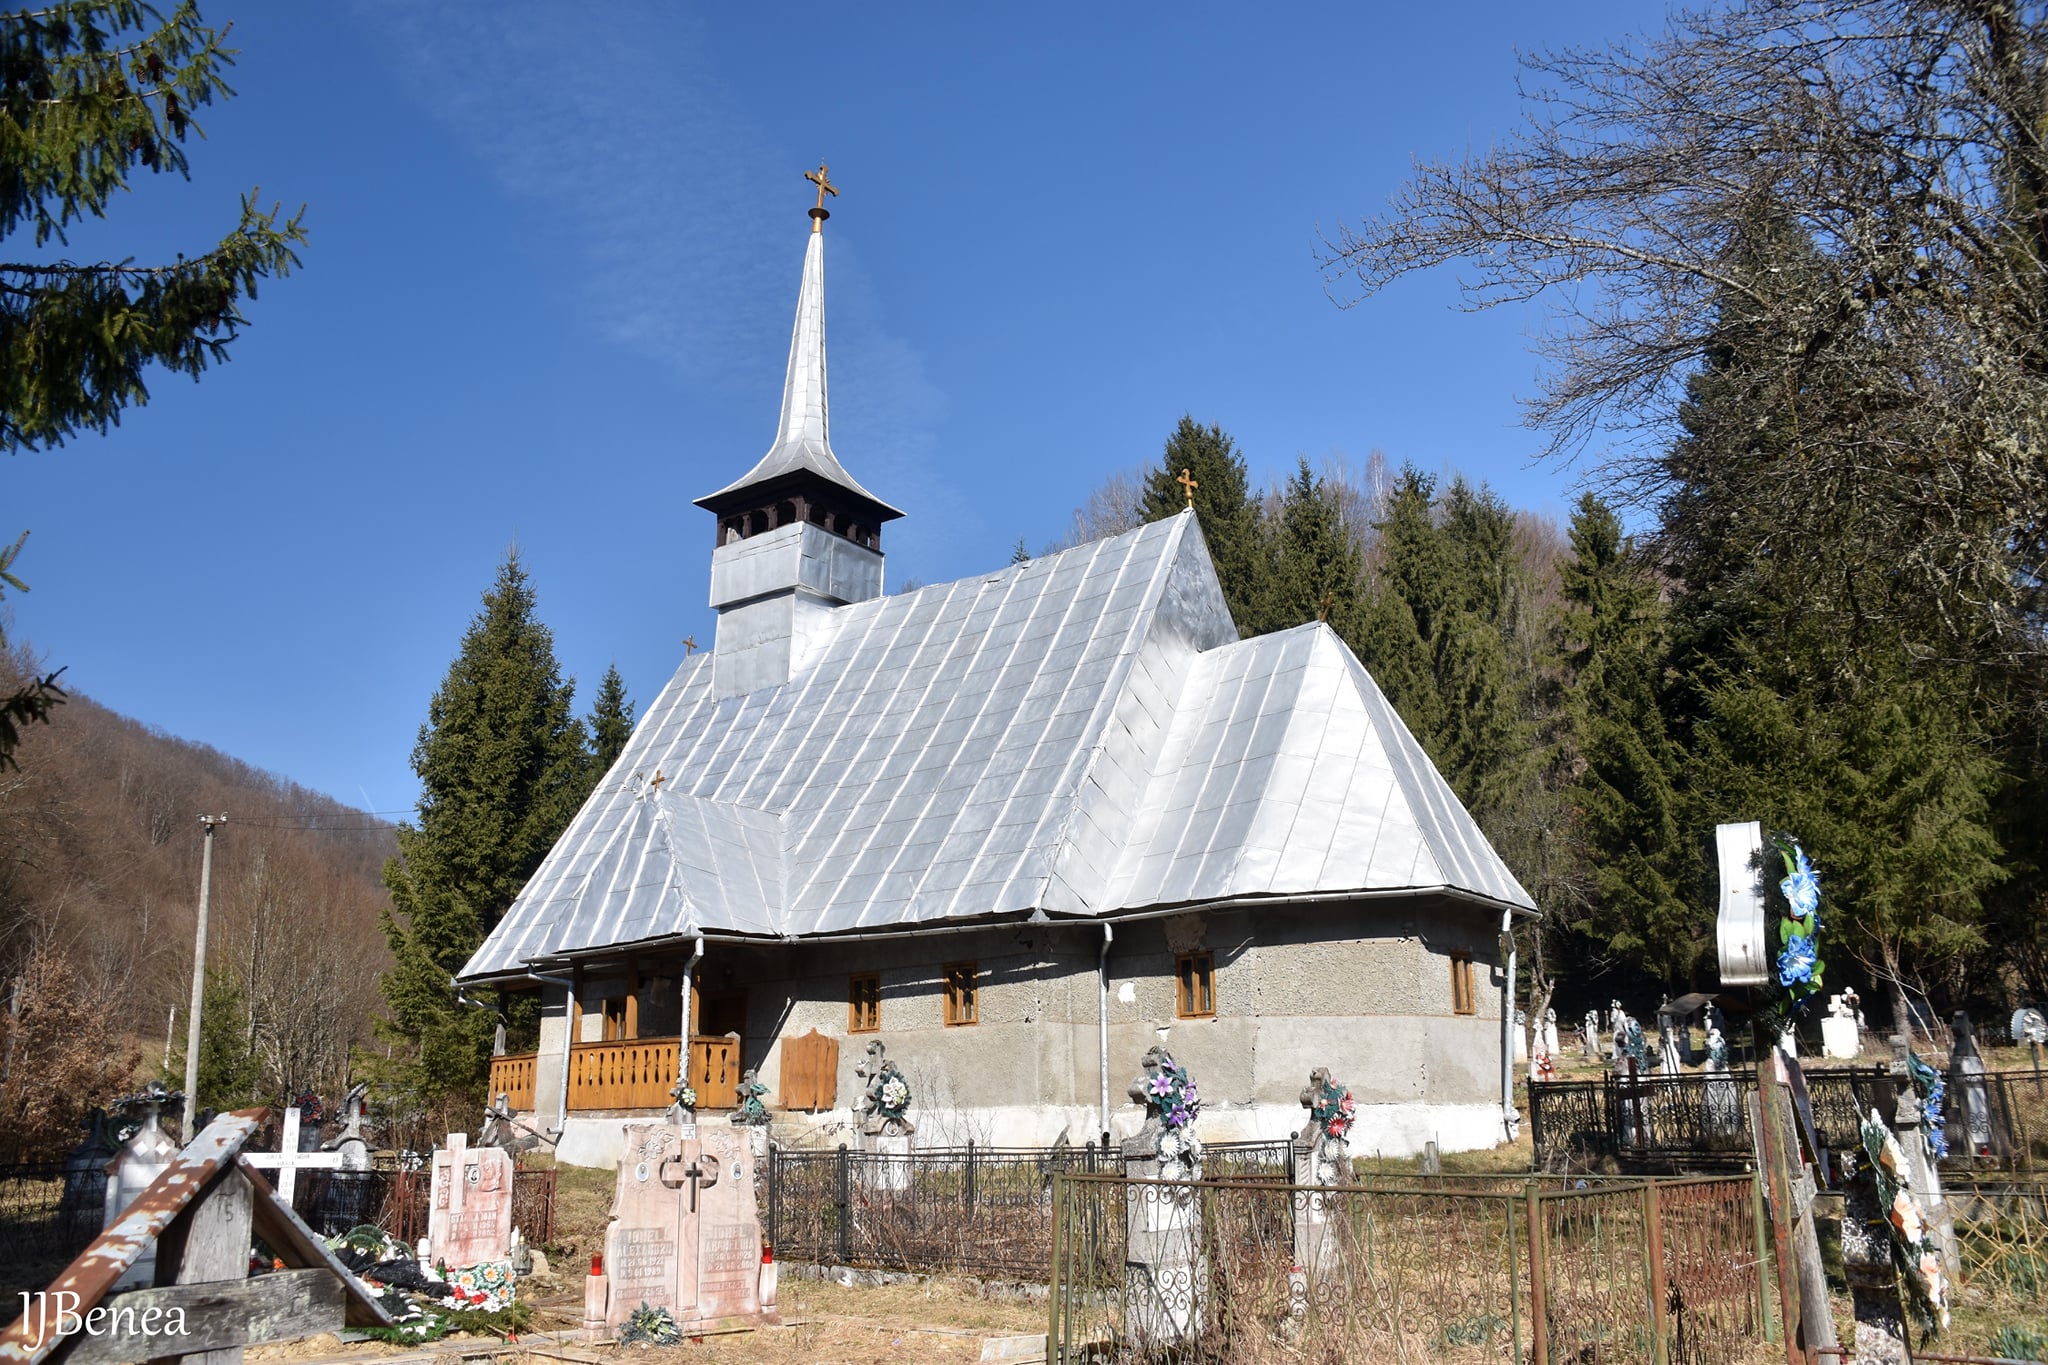  Biserica de lemn din Bulzeștiul de Sus - Ioan Benea Jurca